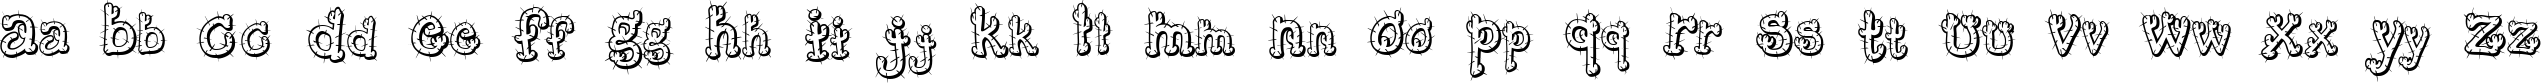 Пример написания английского алфавита шрифтом Cactus Sandwich FM